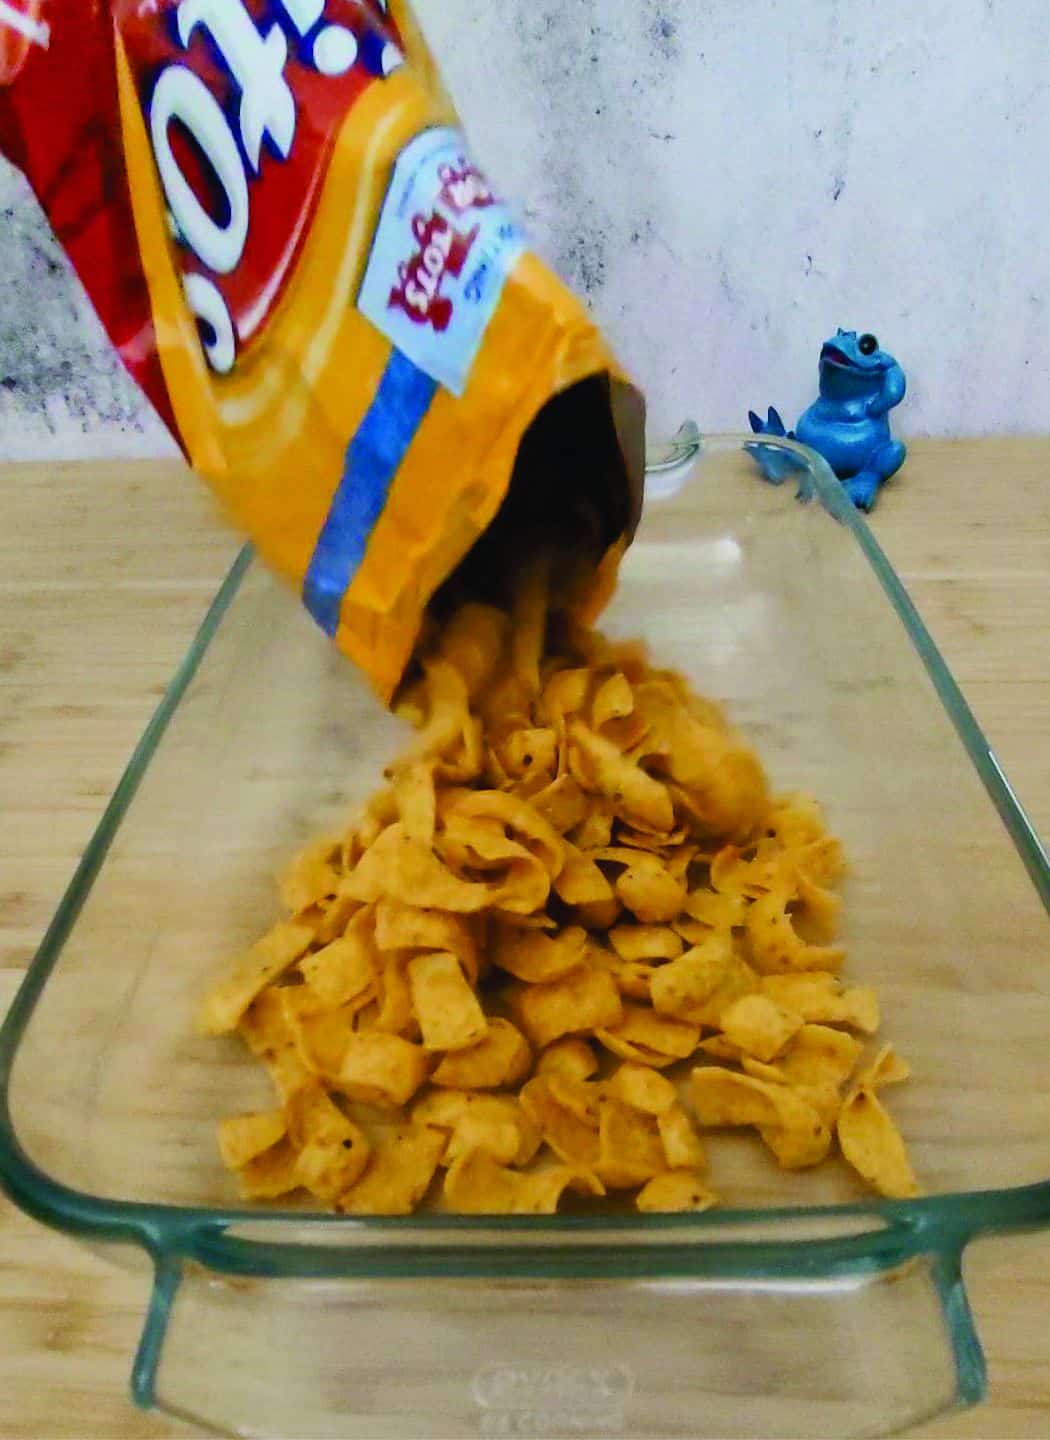 pouring a bag of Fritos into a glass baking pan